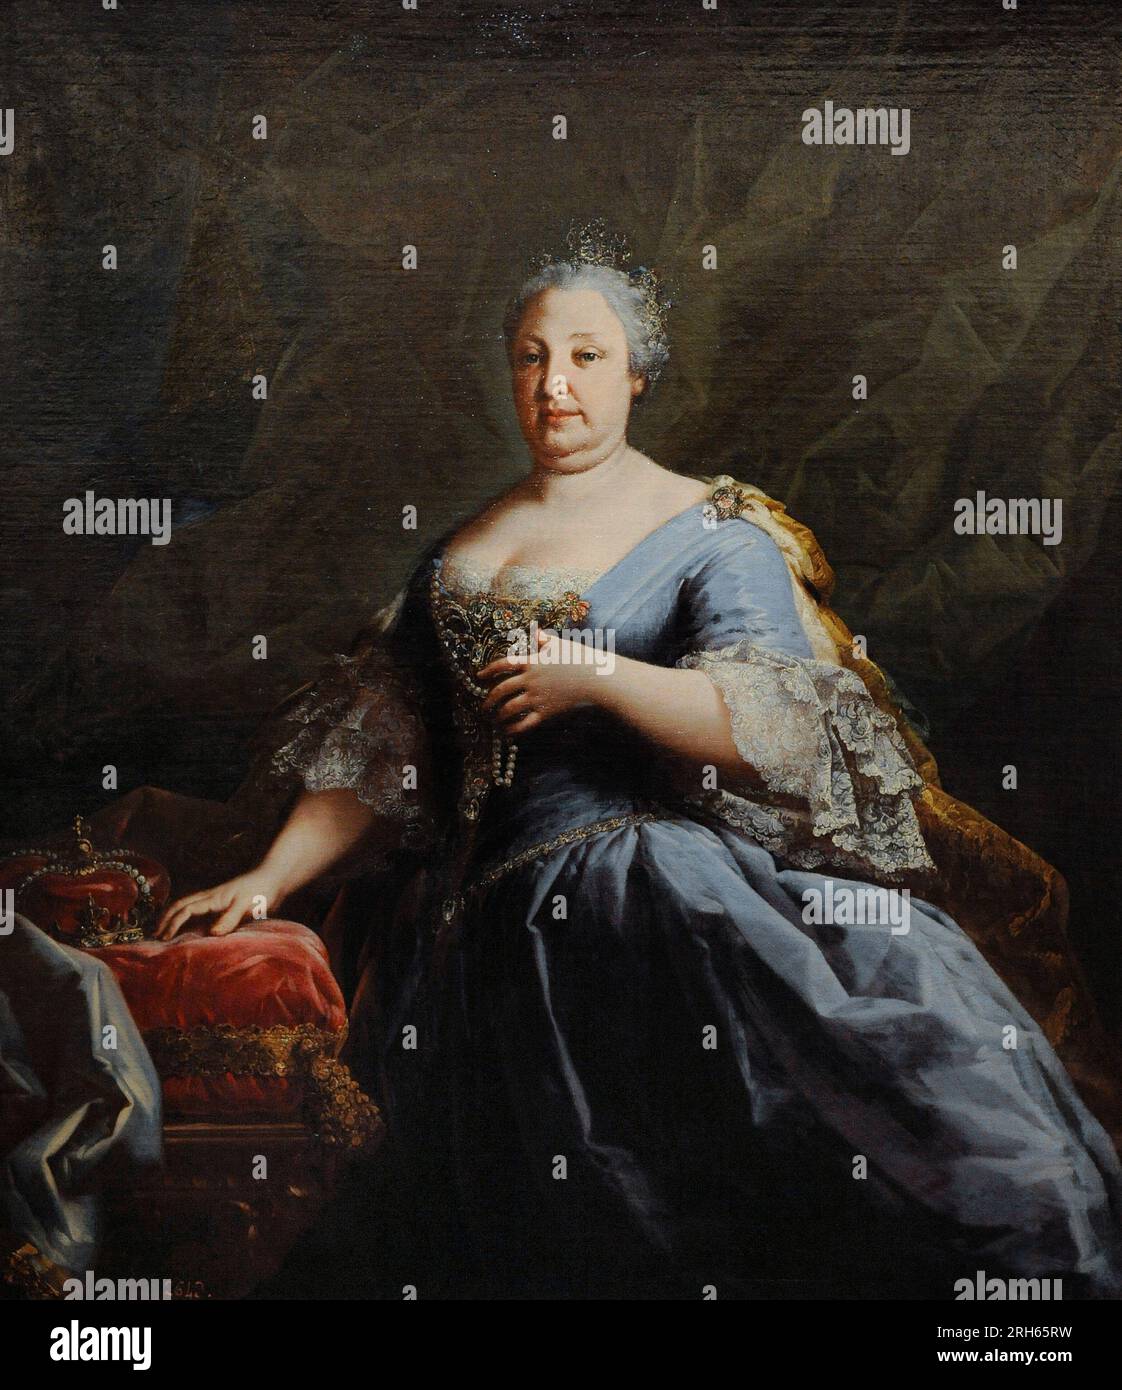 Barbara von Portugal (1711-1758). Königin von Spanien. Anonymes Porträt. Mitte des 18. Jahrhunderts. Geschichtsmuseum, Madrid, Spanien. (Ausgeliehen, Prado Museum, Madrid). Stockfoto